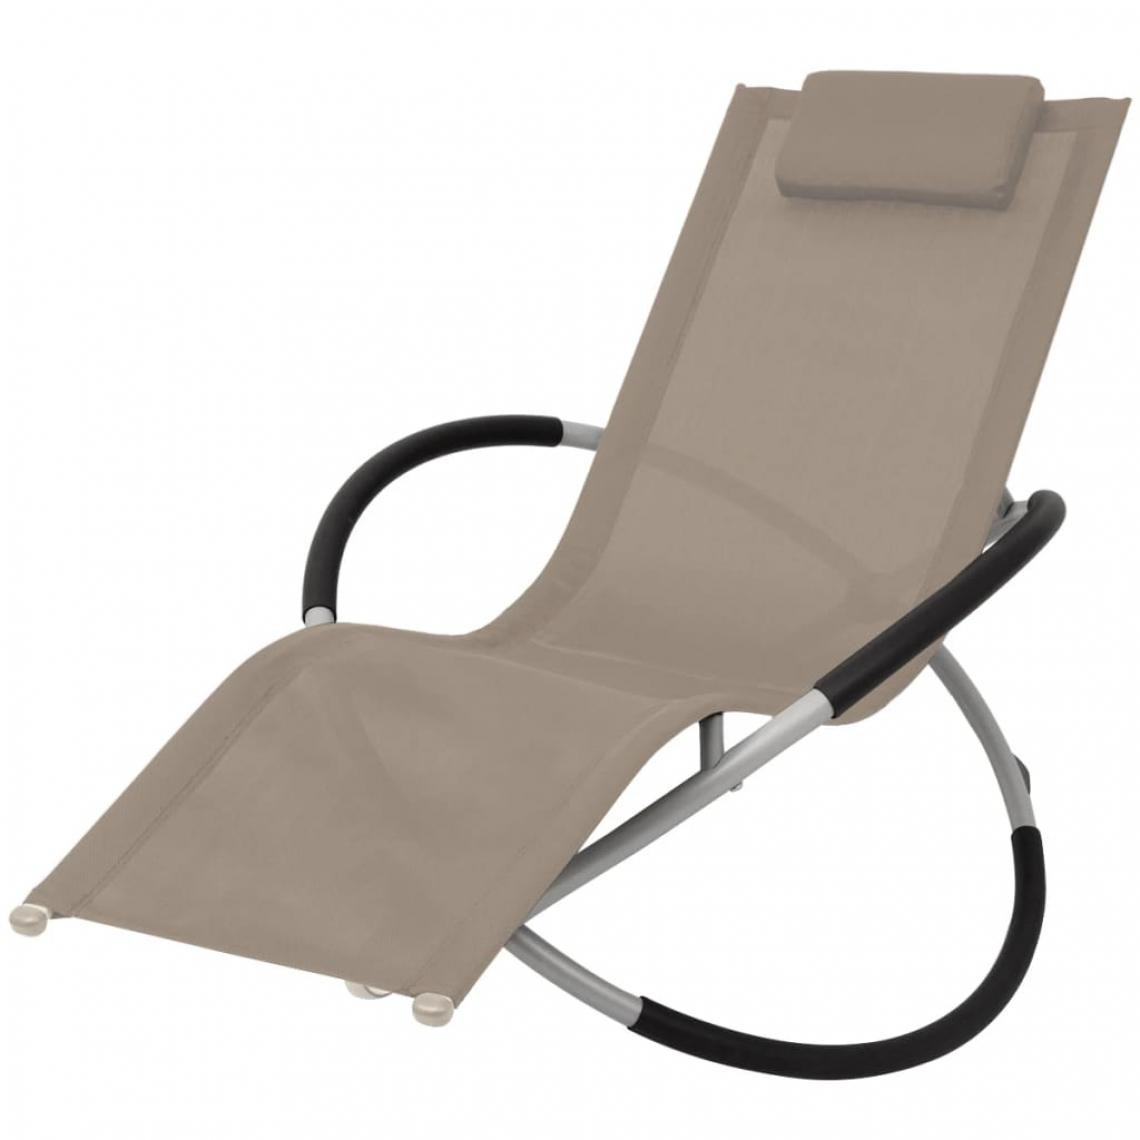 Chunhelife - Chaise longue géométrique d'extérieur Acier Taupe - Transats, chaises longues